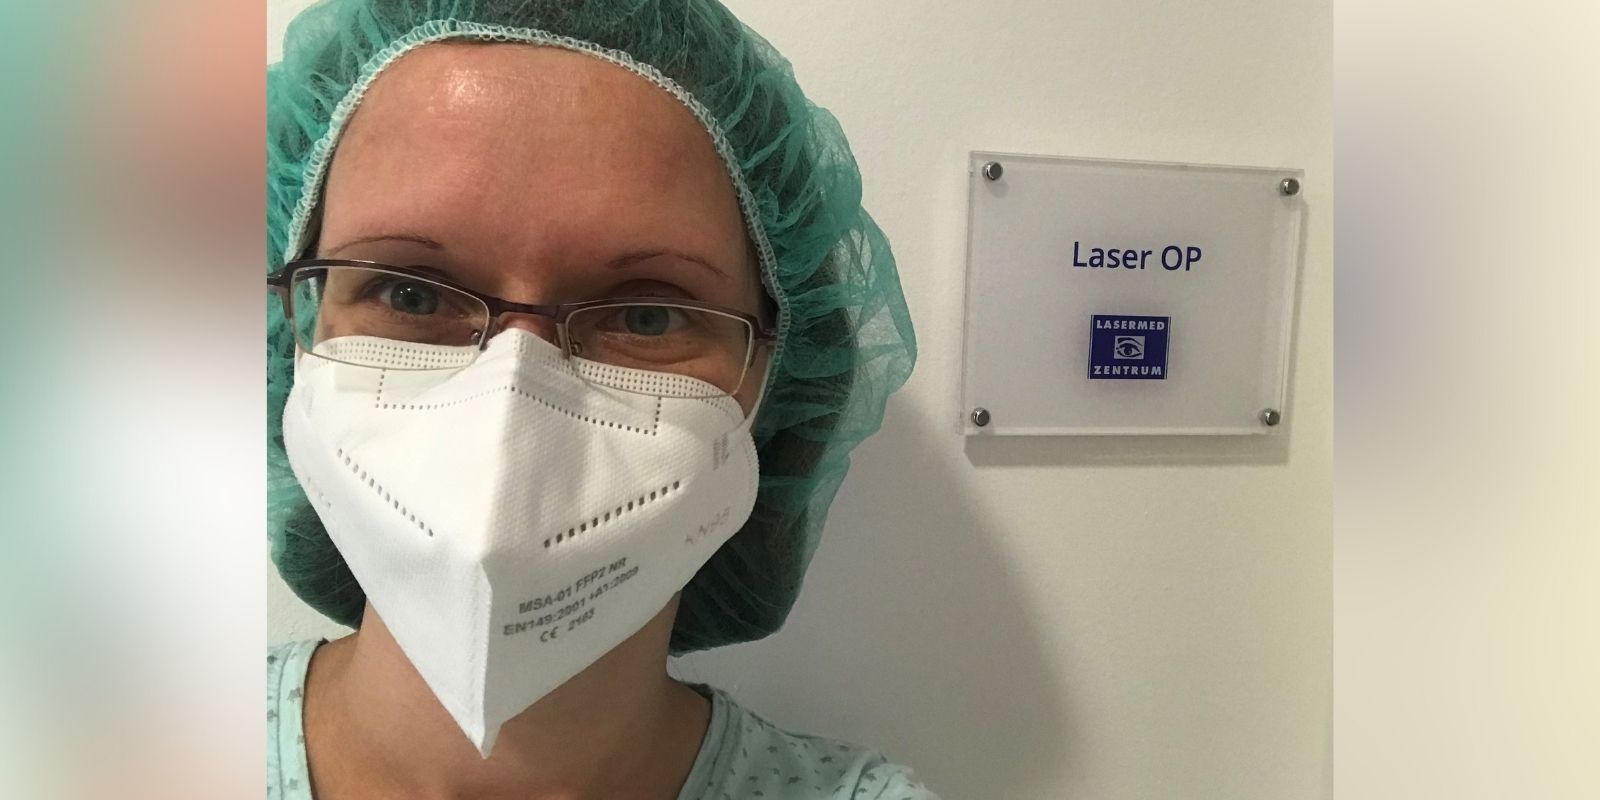 Femto-Lasik Augenlaserbehandlung: Frau mit Brille und OP-Maske vor dem Laser-Behandlungsraum im Augenlaser-Zentrum in der Schönhauser Allee